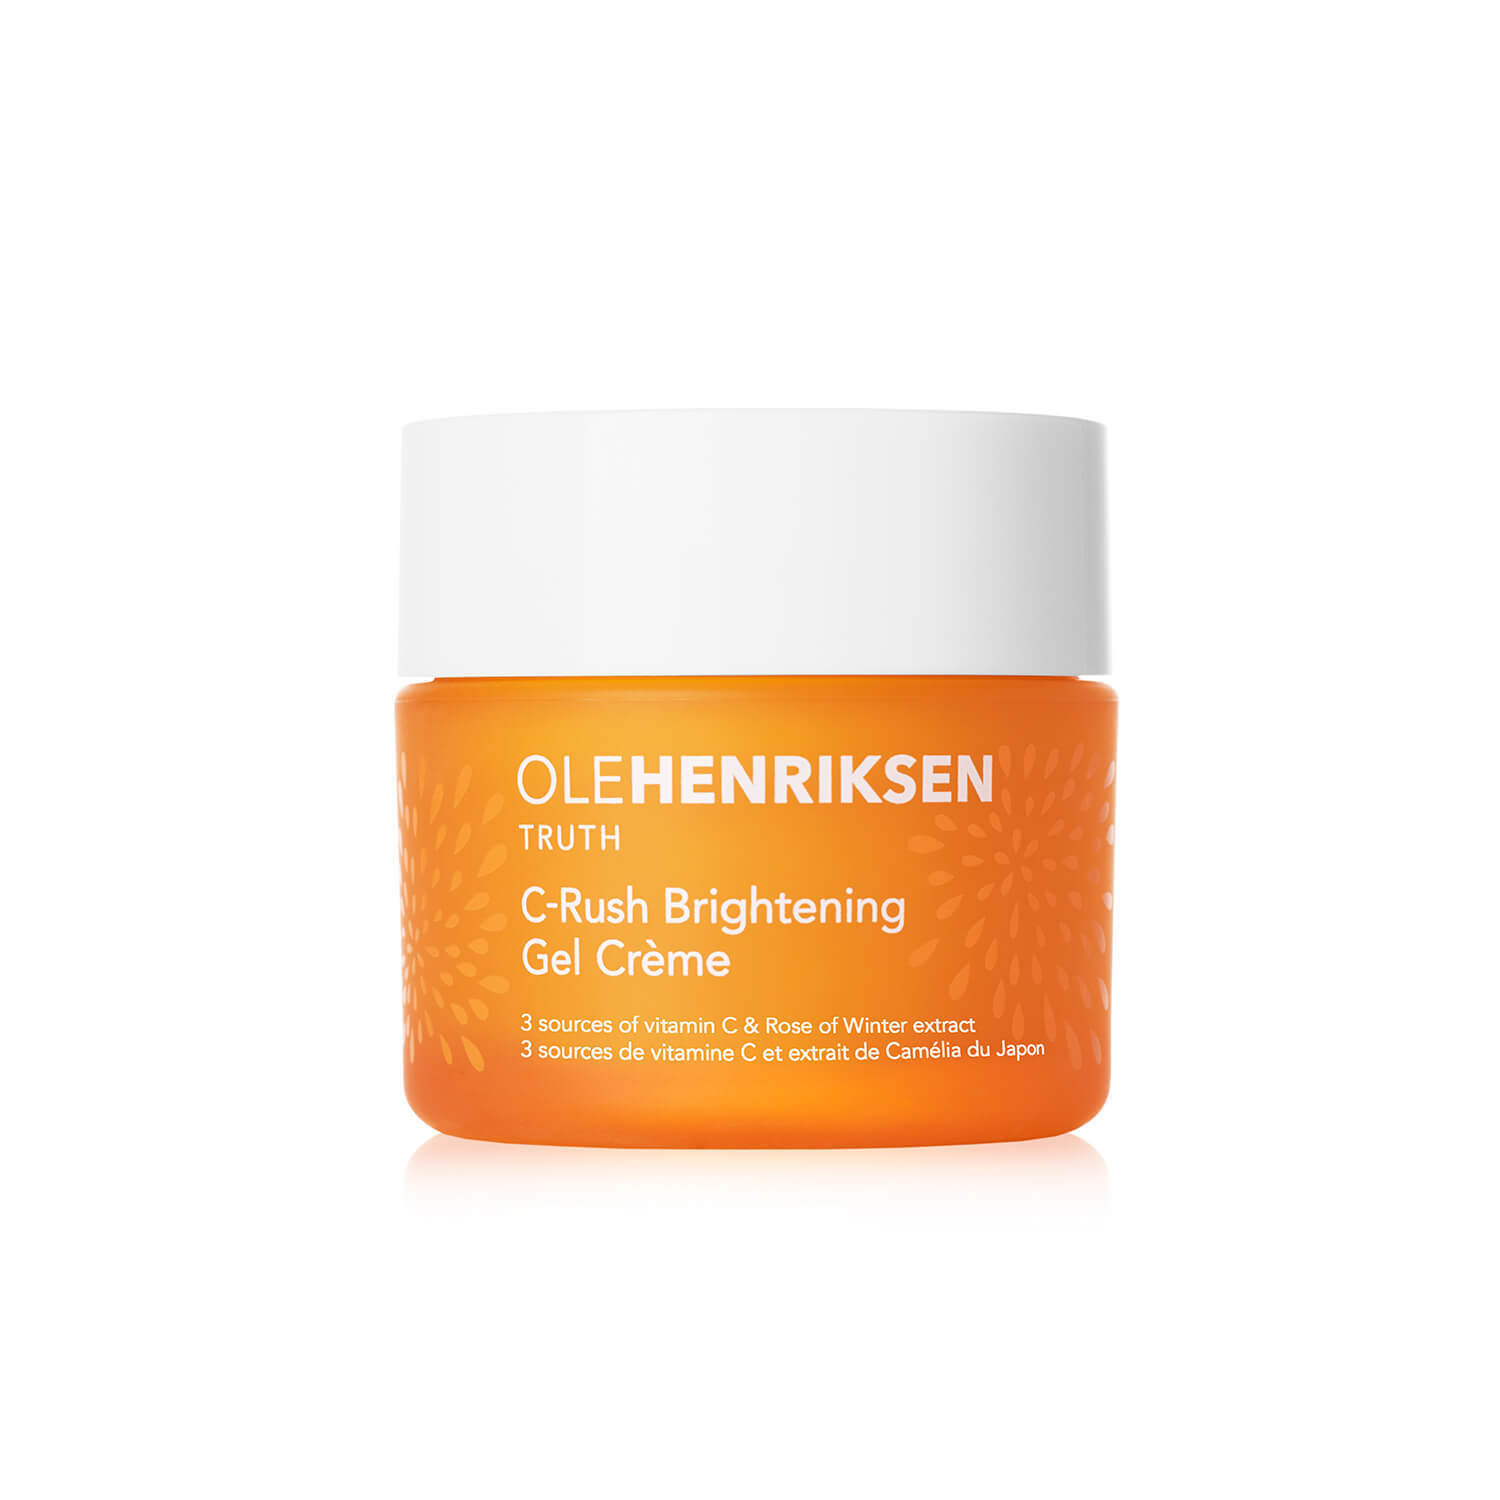 Gel-crema C-Rush de OleHenriksen, con tres fuentes de vitamina C. (Precio: 40,99)